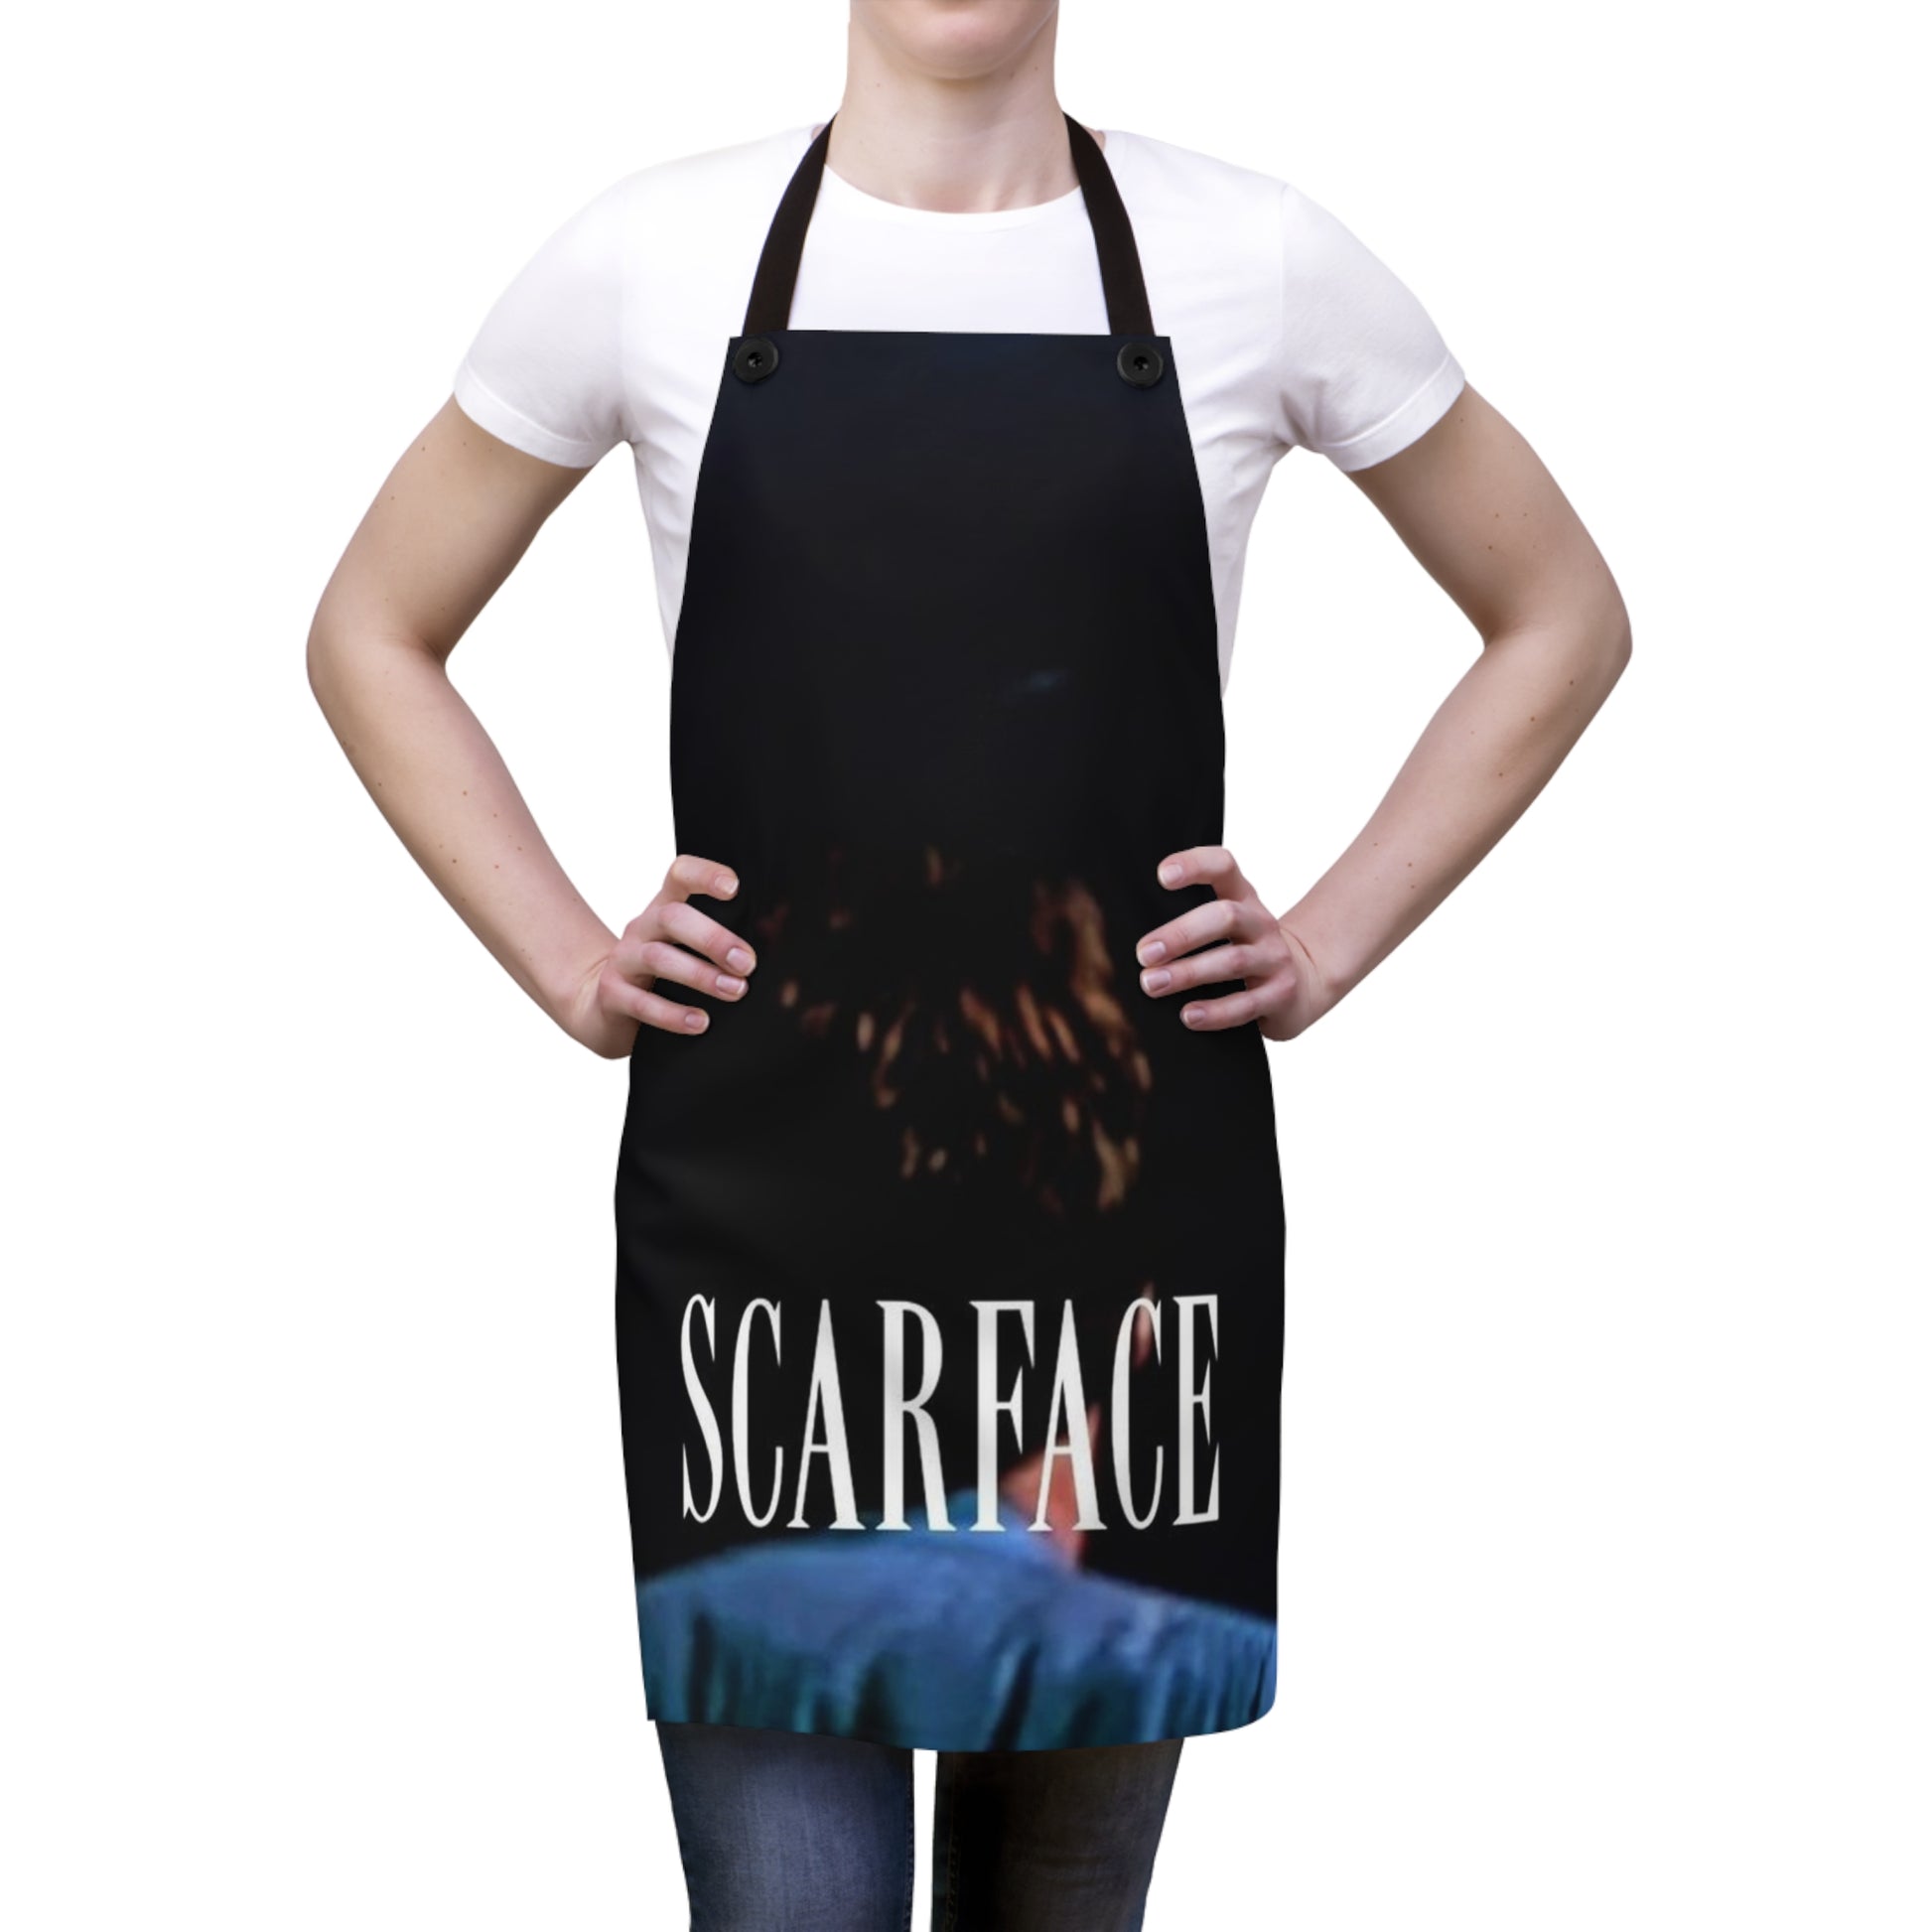 Grembiule da Cucina "Scarface Tribute"